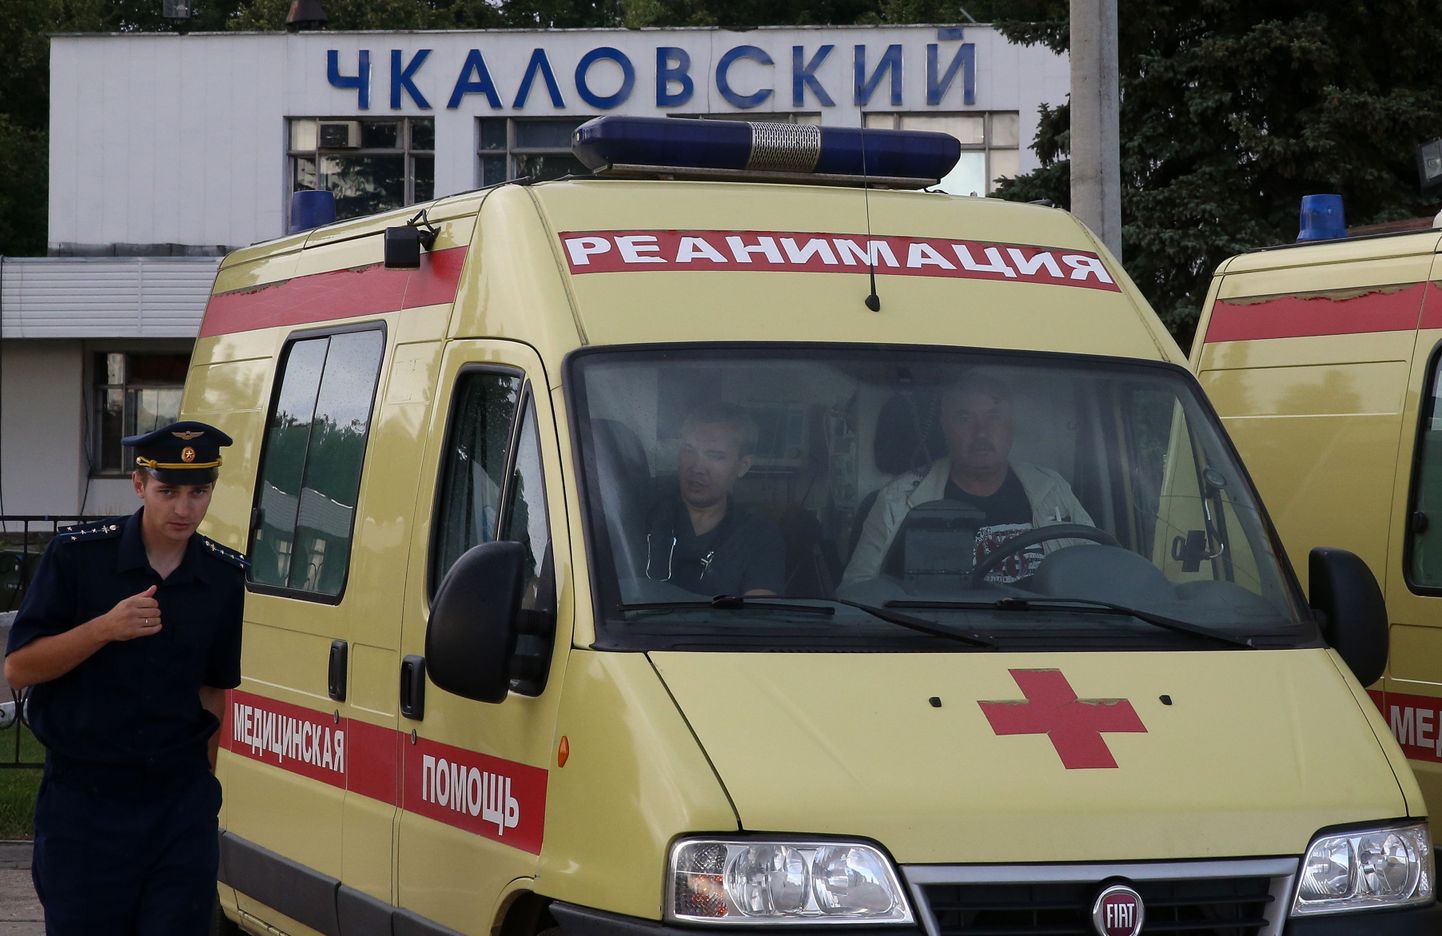 Vene kiirabiauto. Pilt on illustratiivne